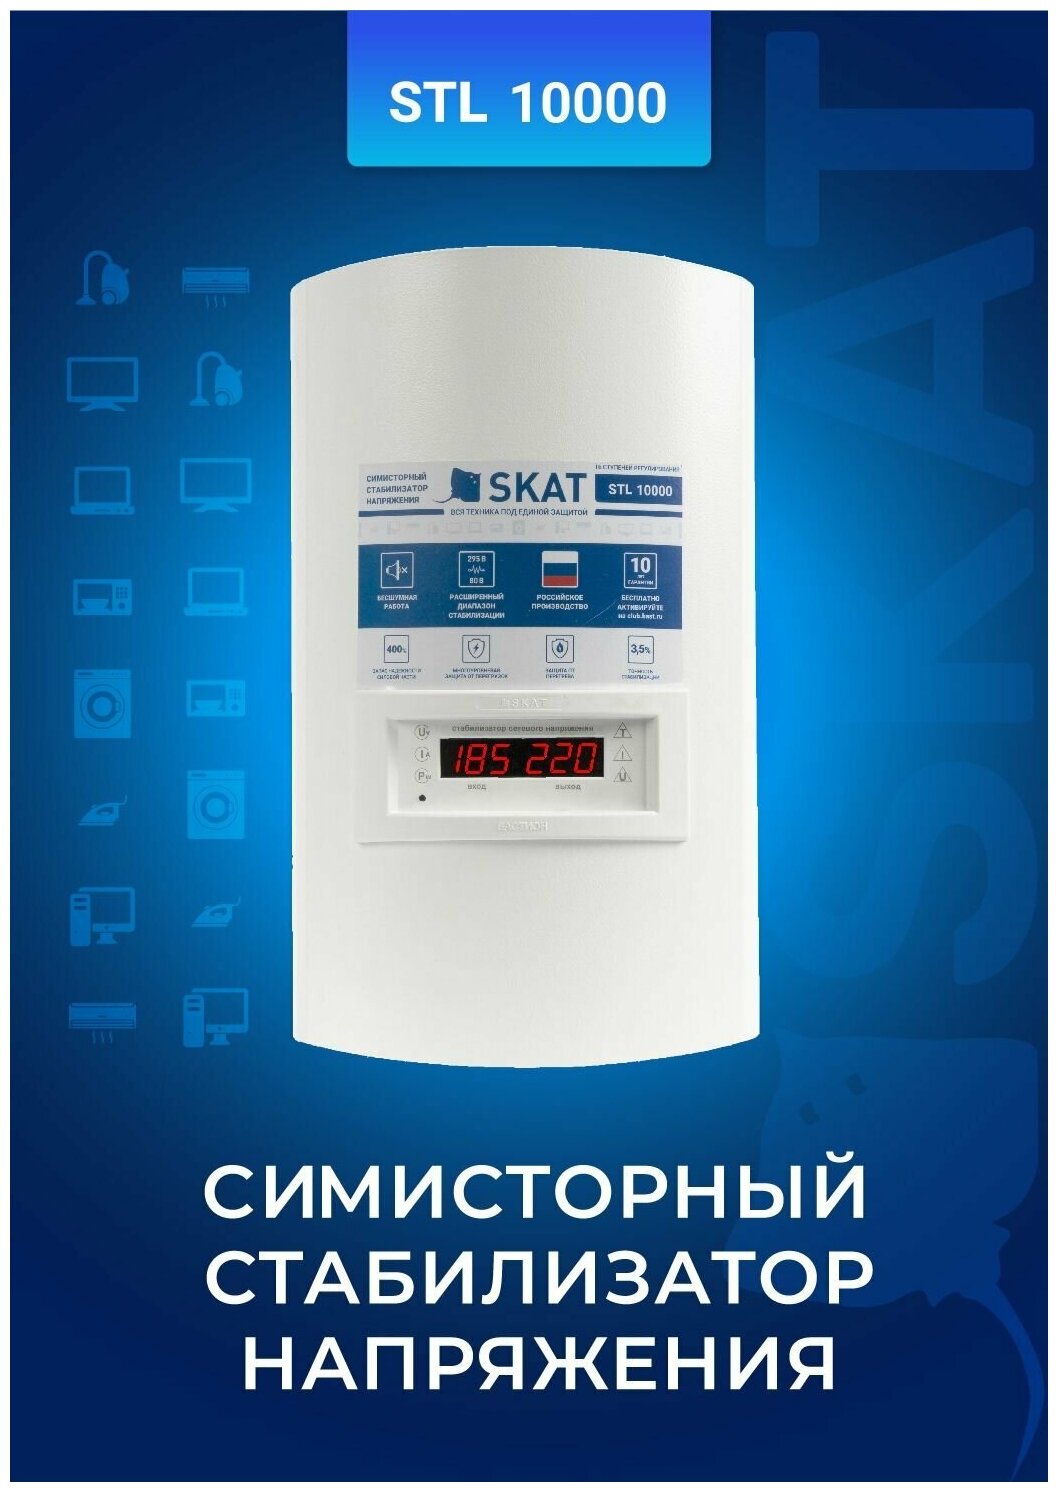 Стабилизатор напряжения SKAT STL-10000 ИСП. Н (настенный) для всего дома